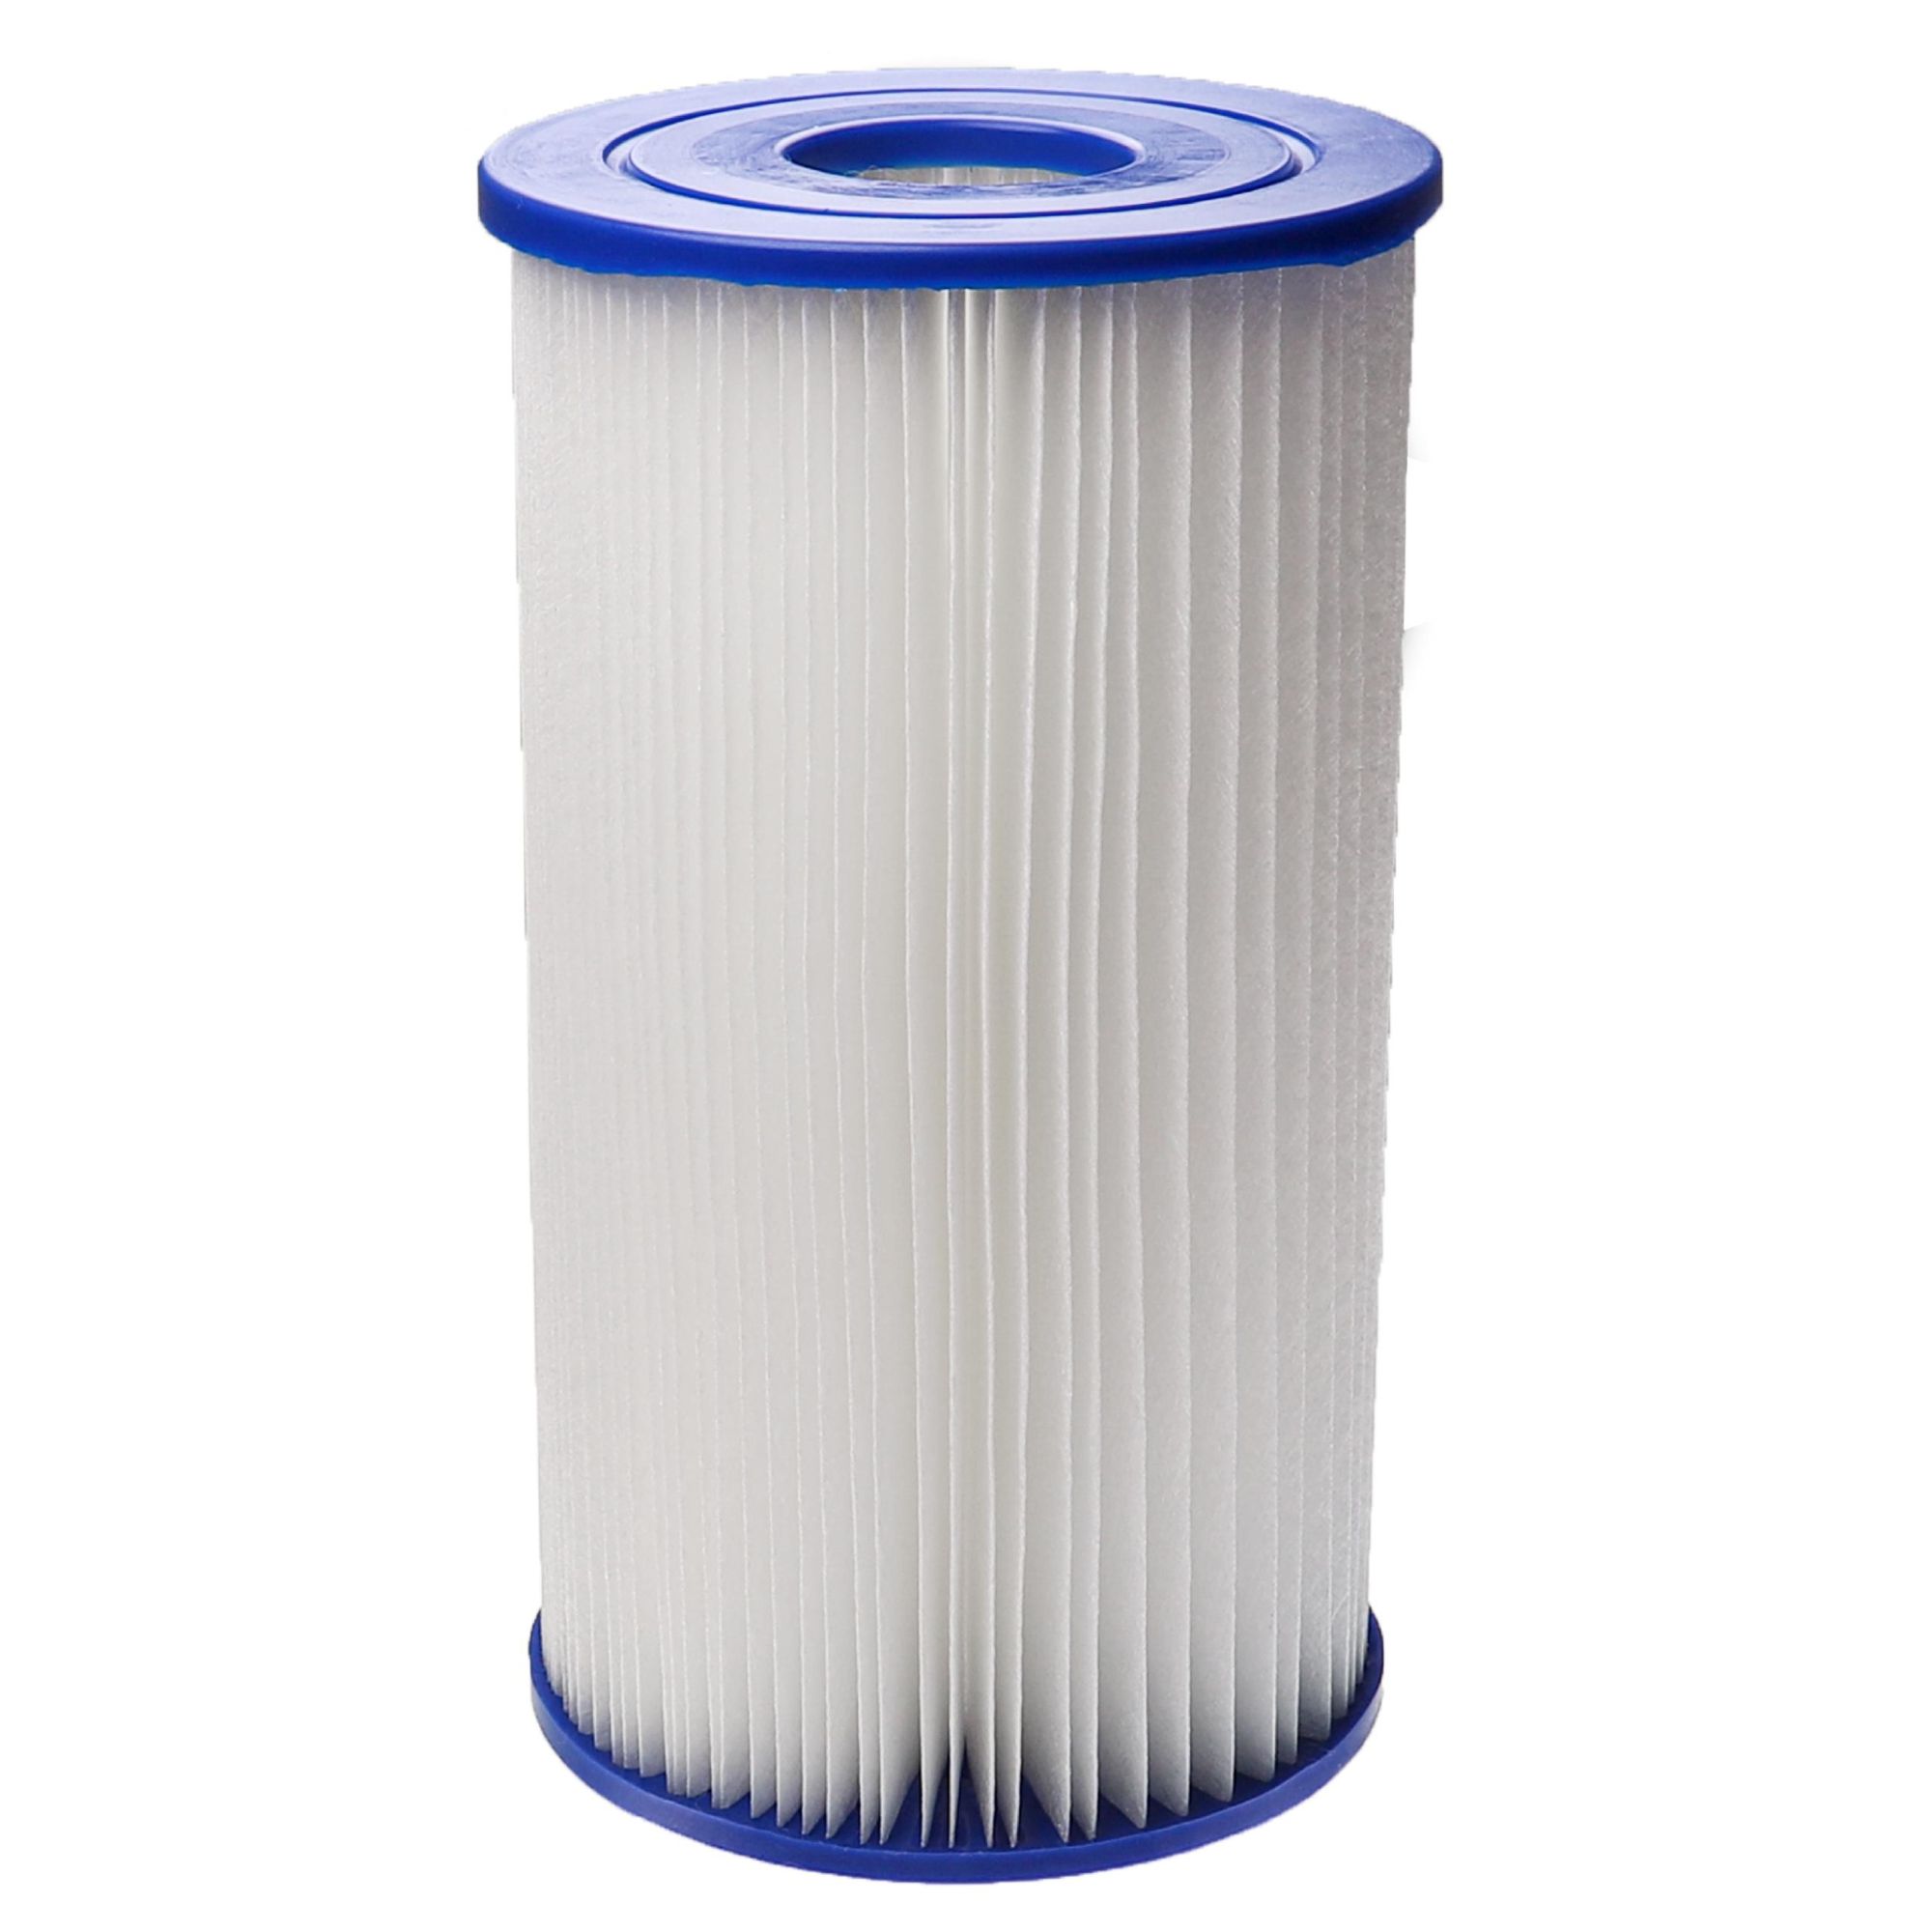 vhbw Cartouche filtrante compatible avec Intex B1 piscine pompe de filtration - Filtre à eau, blanc / bleu